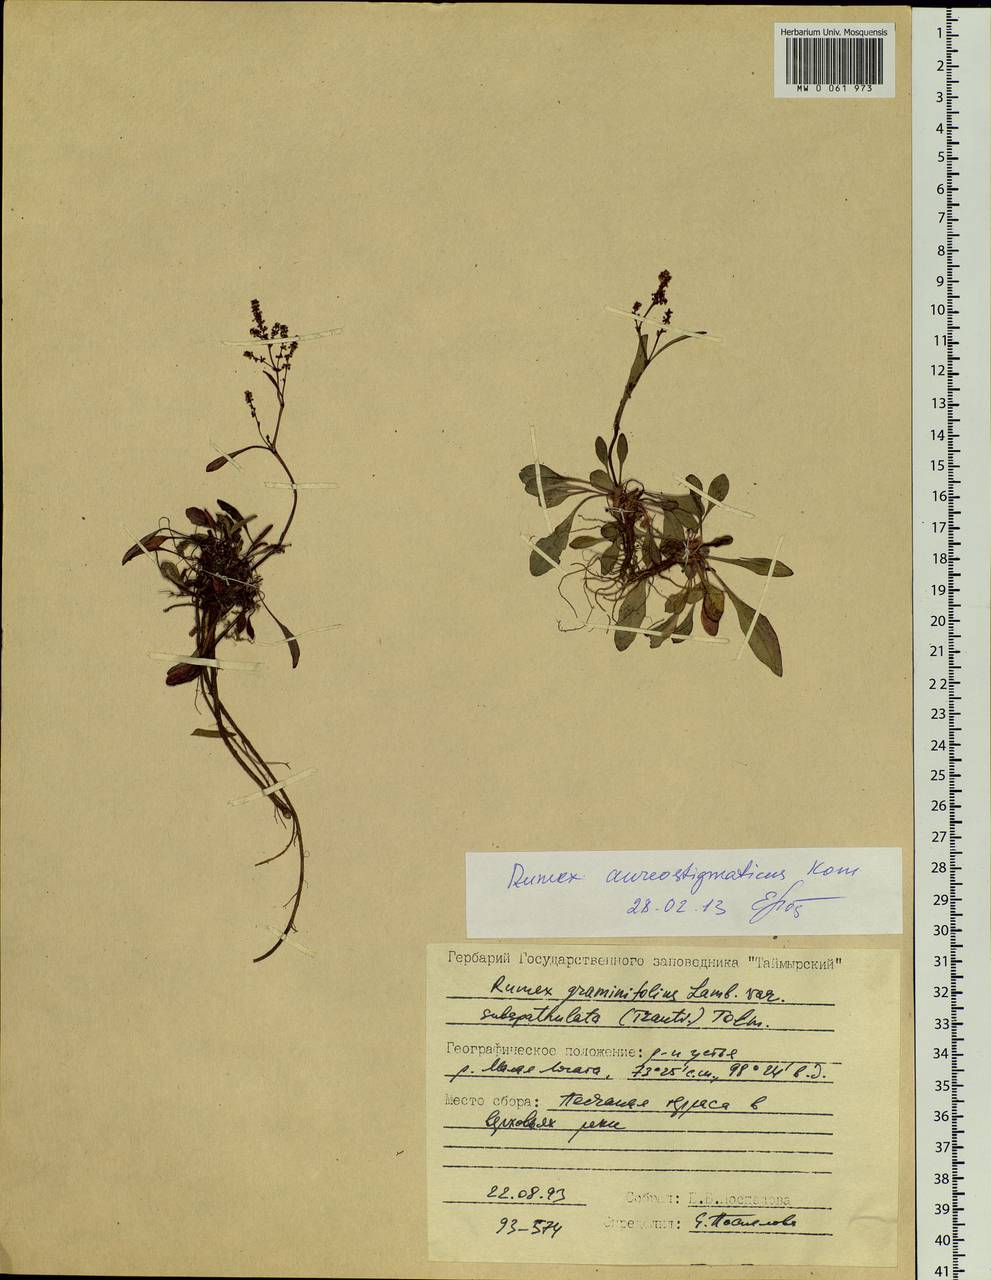 Rumex aureostigmaticus Kom., Siberia, Central Siberia (S3) (Russia)